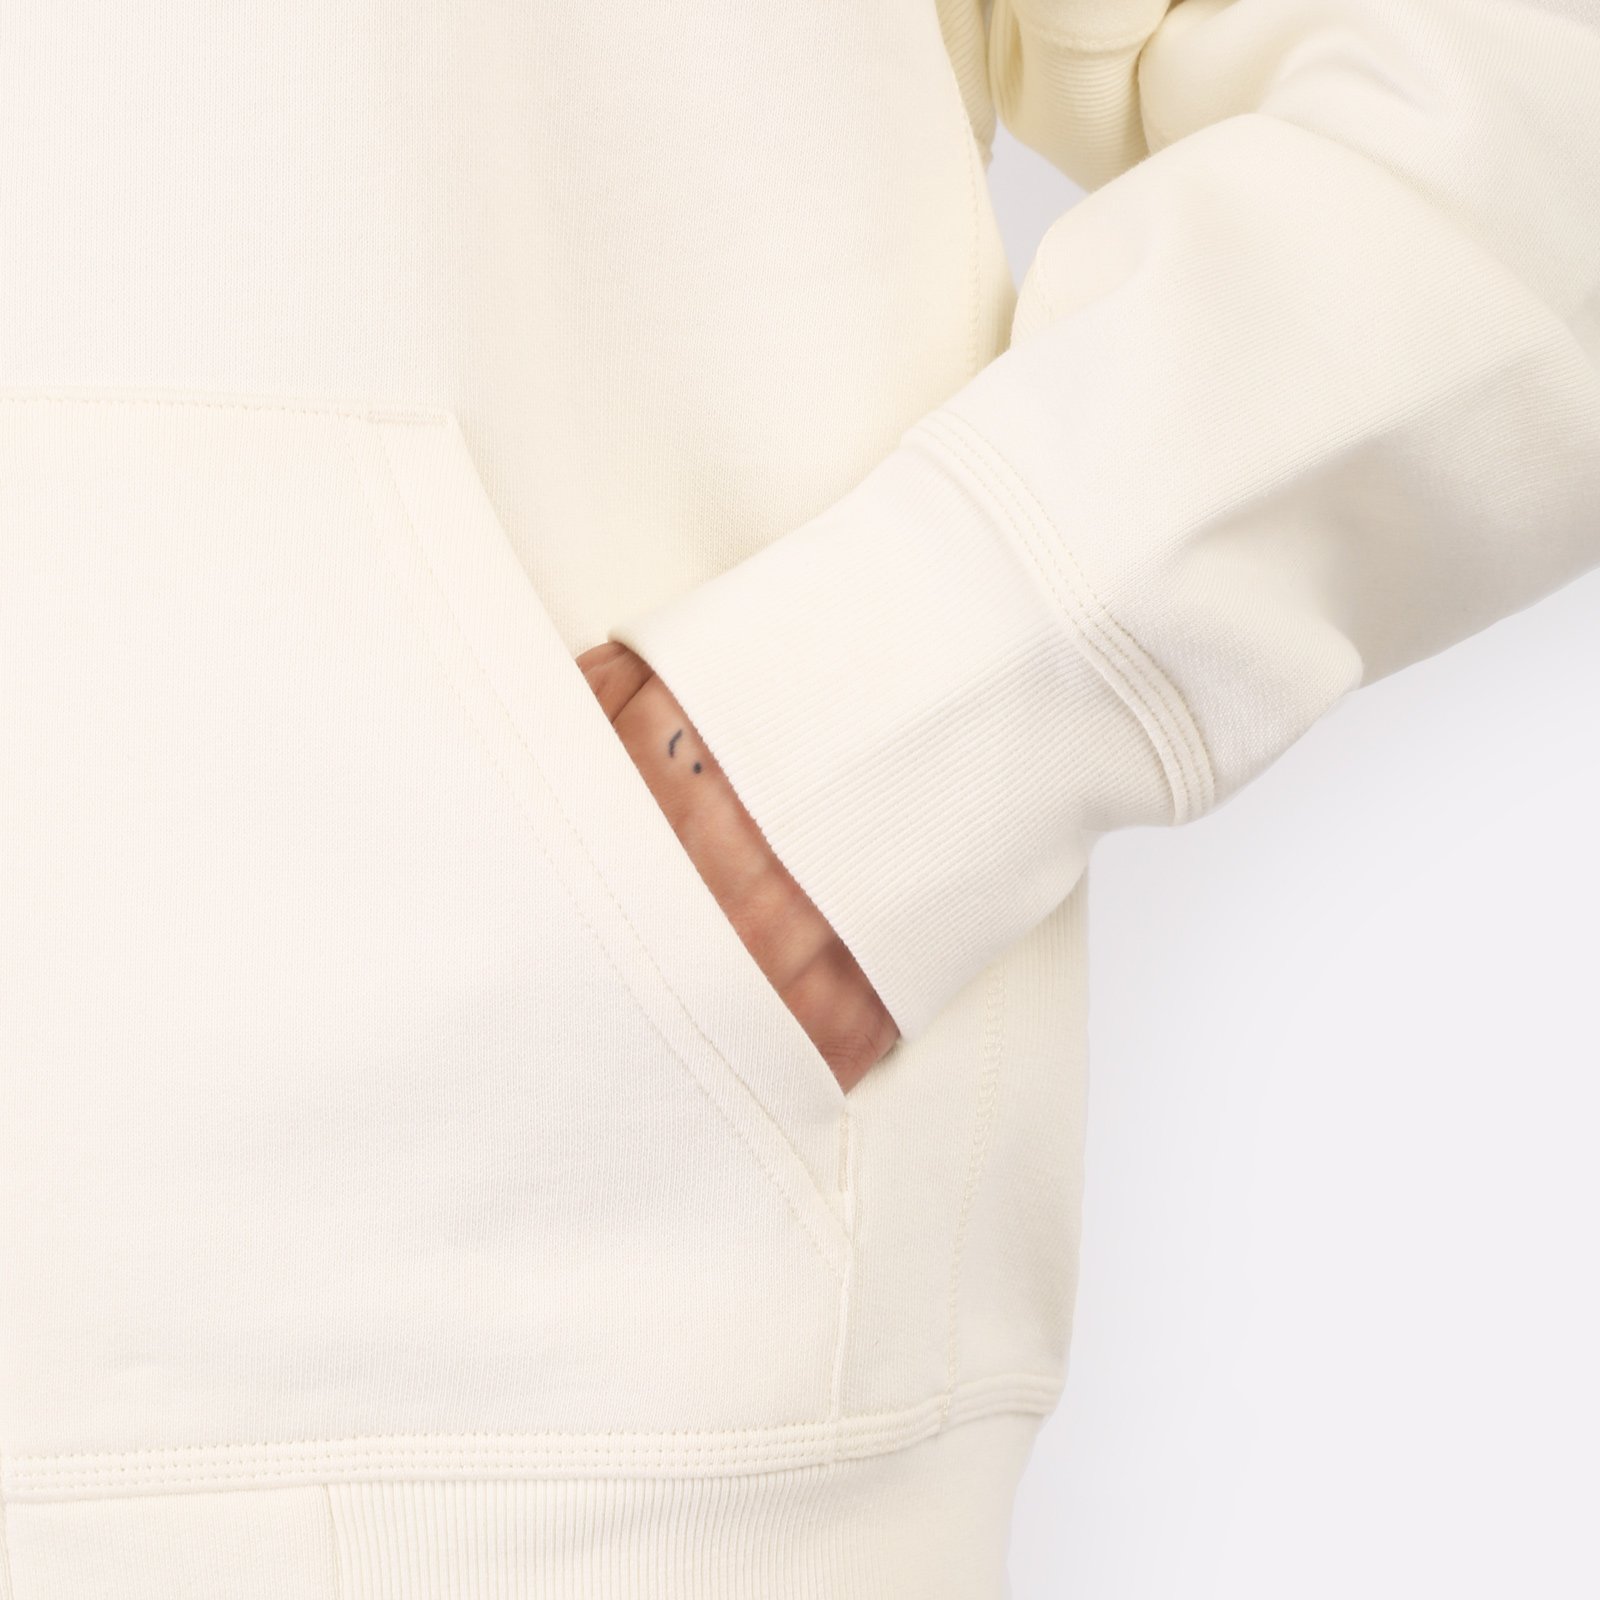 мужская толстовка Carhartt WIP Hooded American Script Jacket  (I033063-wax)  - цена, описание, фото 5